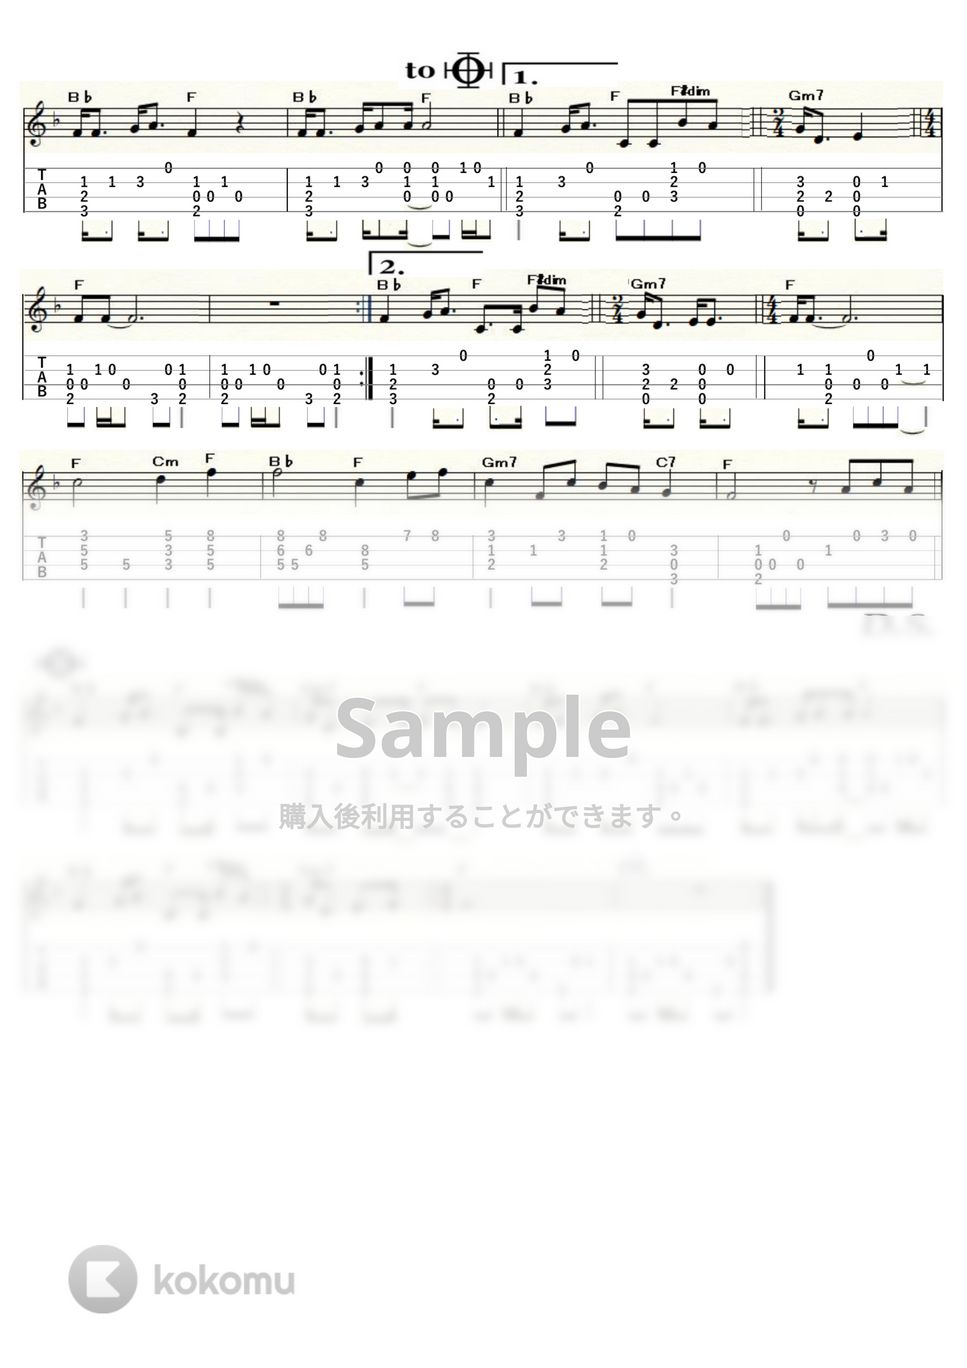 夏川りみ - 涙そうそう (ｳｸﾚﾚｿﾛ / Low-G / 中～上級) by ukulelepapa